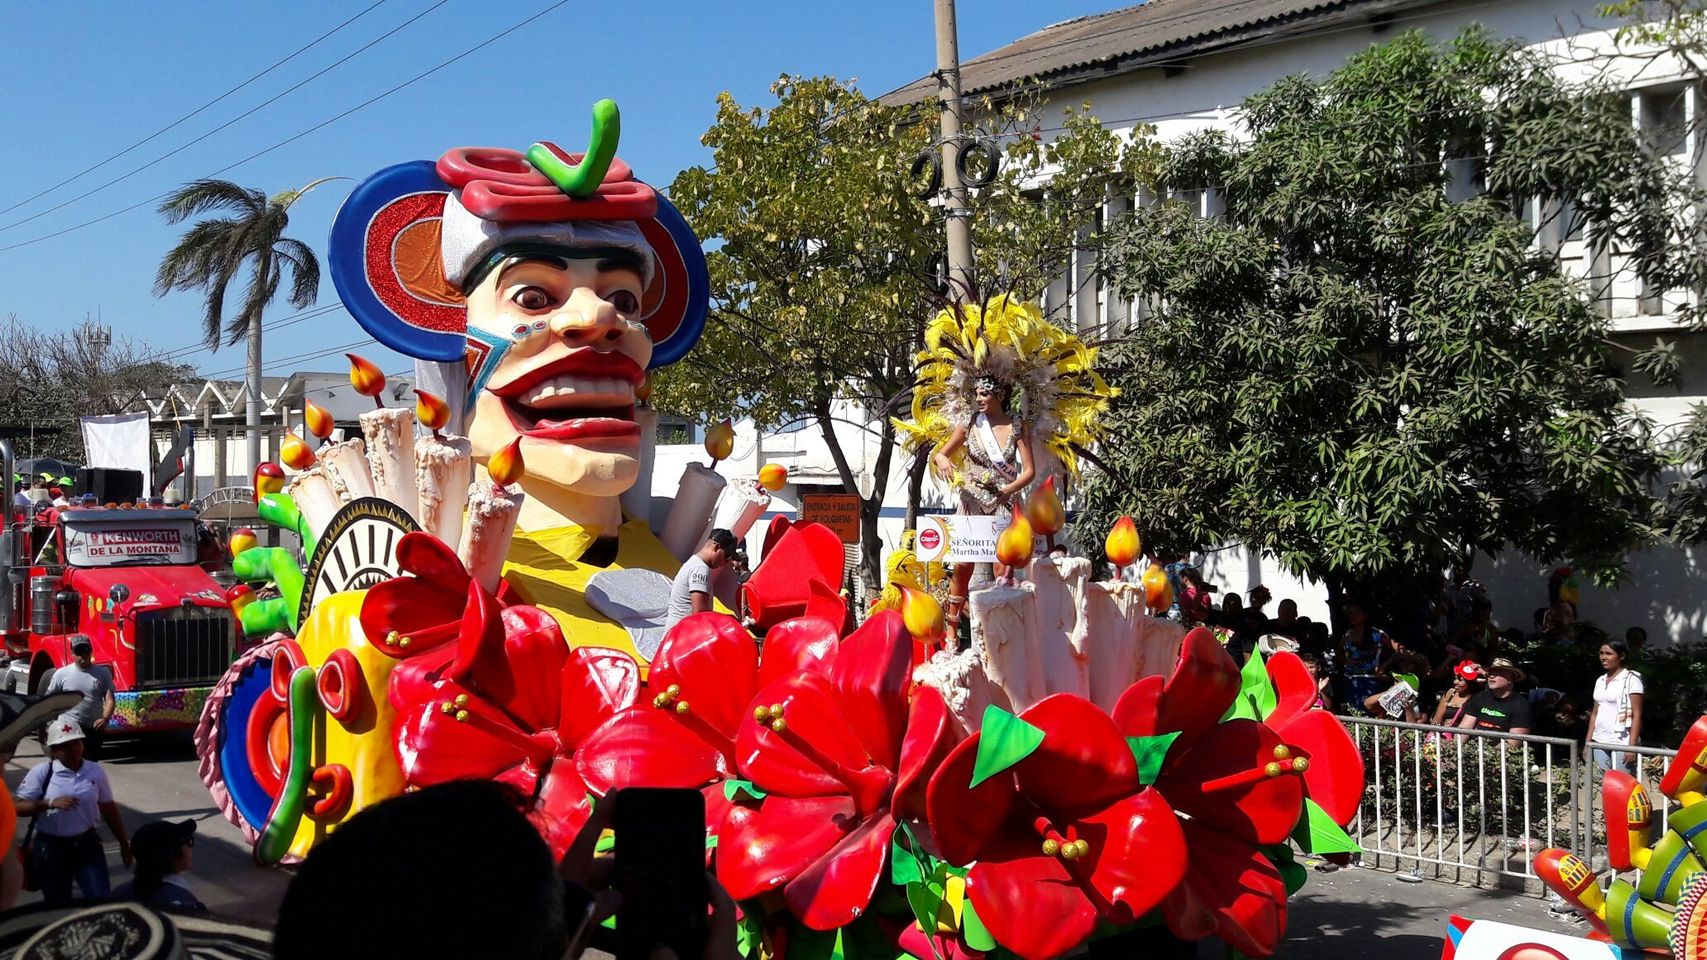 Ervaar de levendige cultuur van het carnaval van Barranquilla